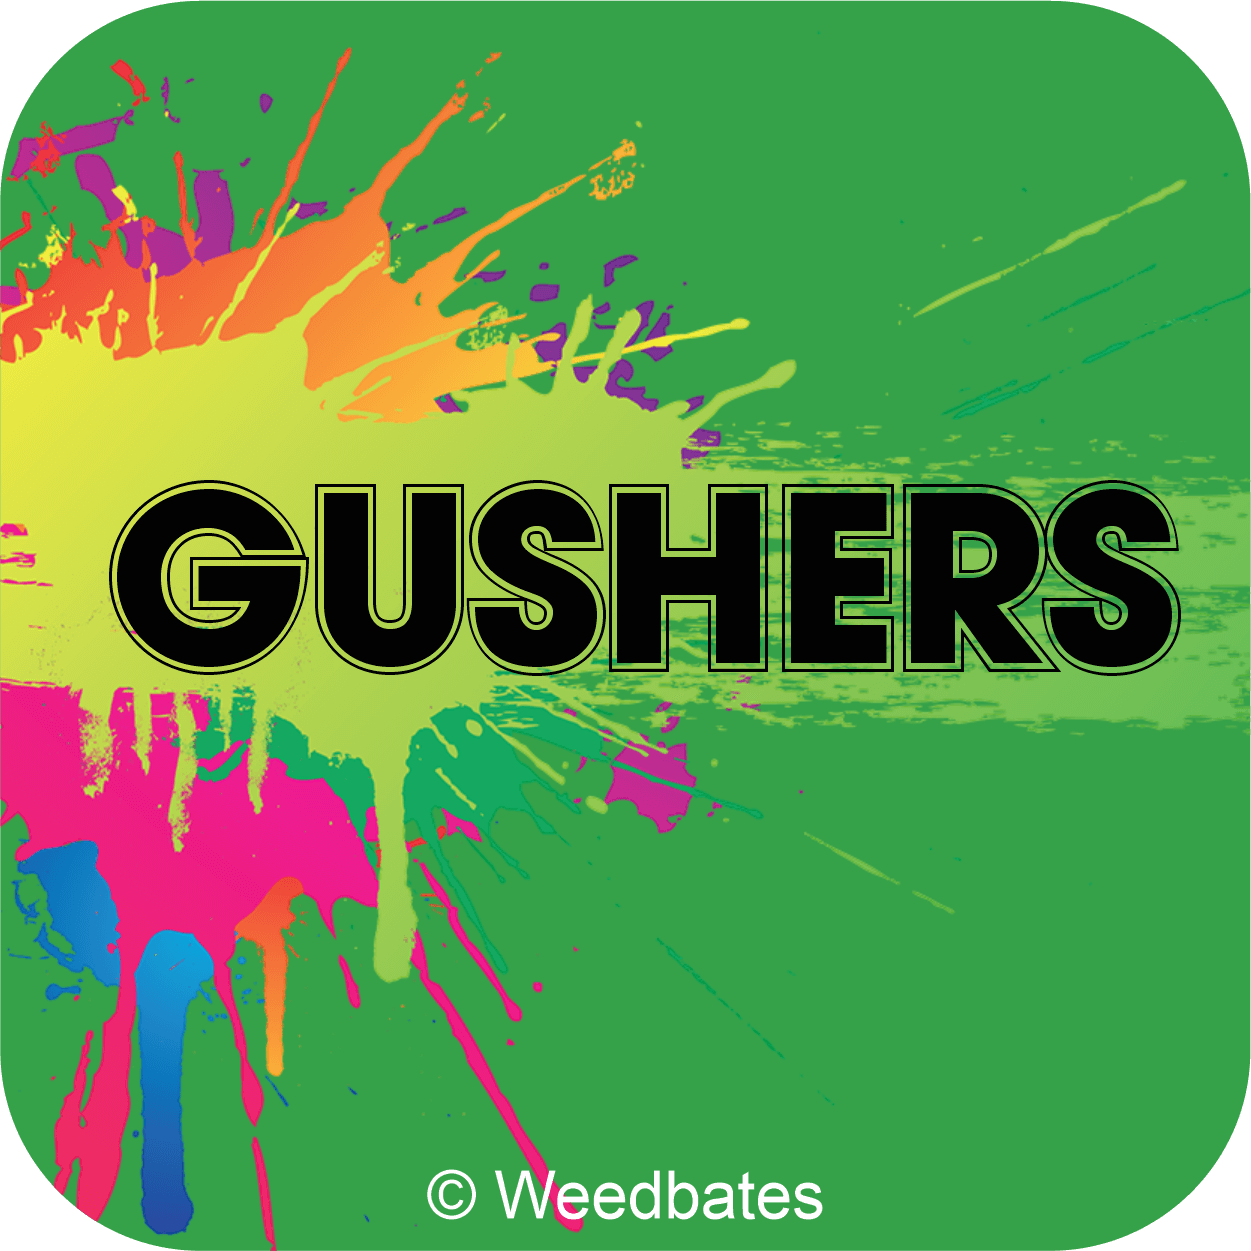 Gushers strain